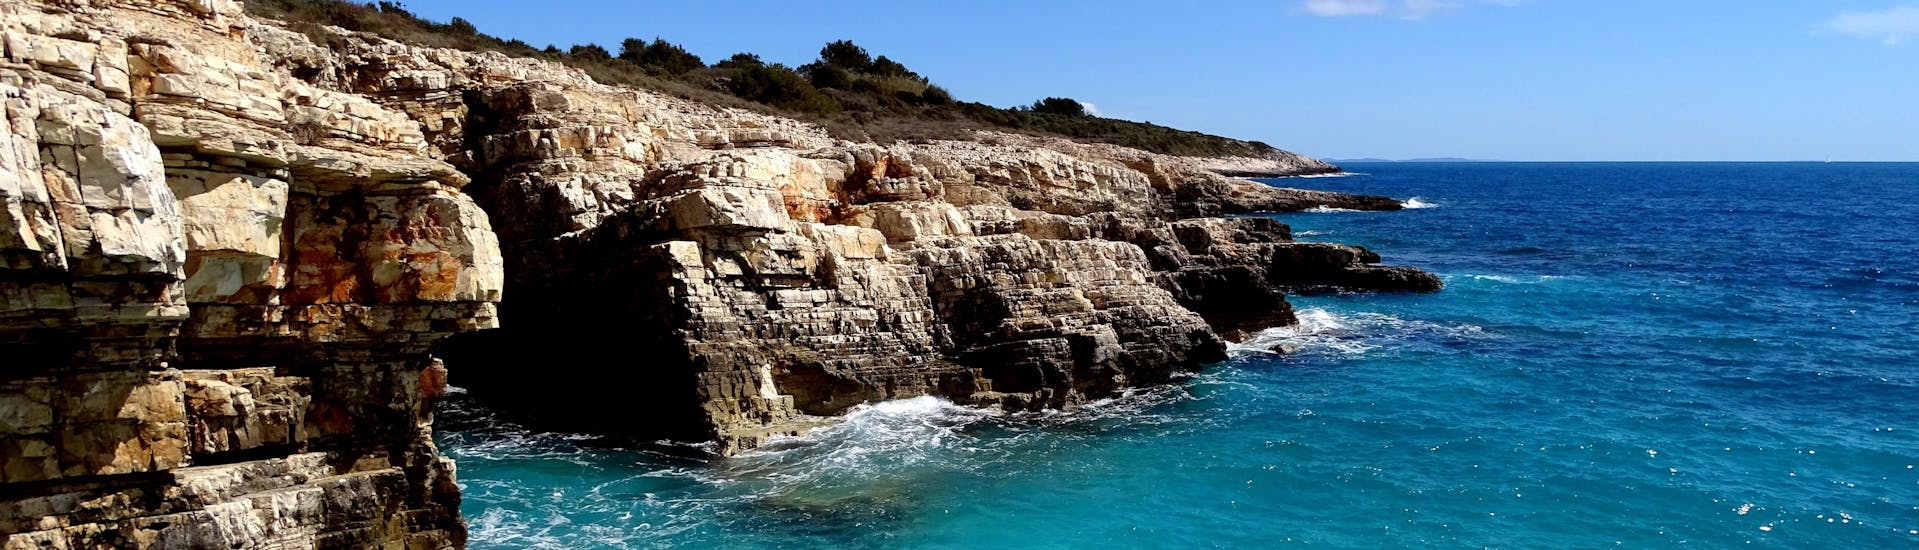 Bild vom Wasser, das gegen das Kap Kamenjak prallt, ein schönes Ziel für Bootsausflüge in Istrien, Kroatien. 